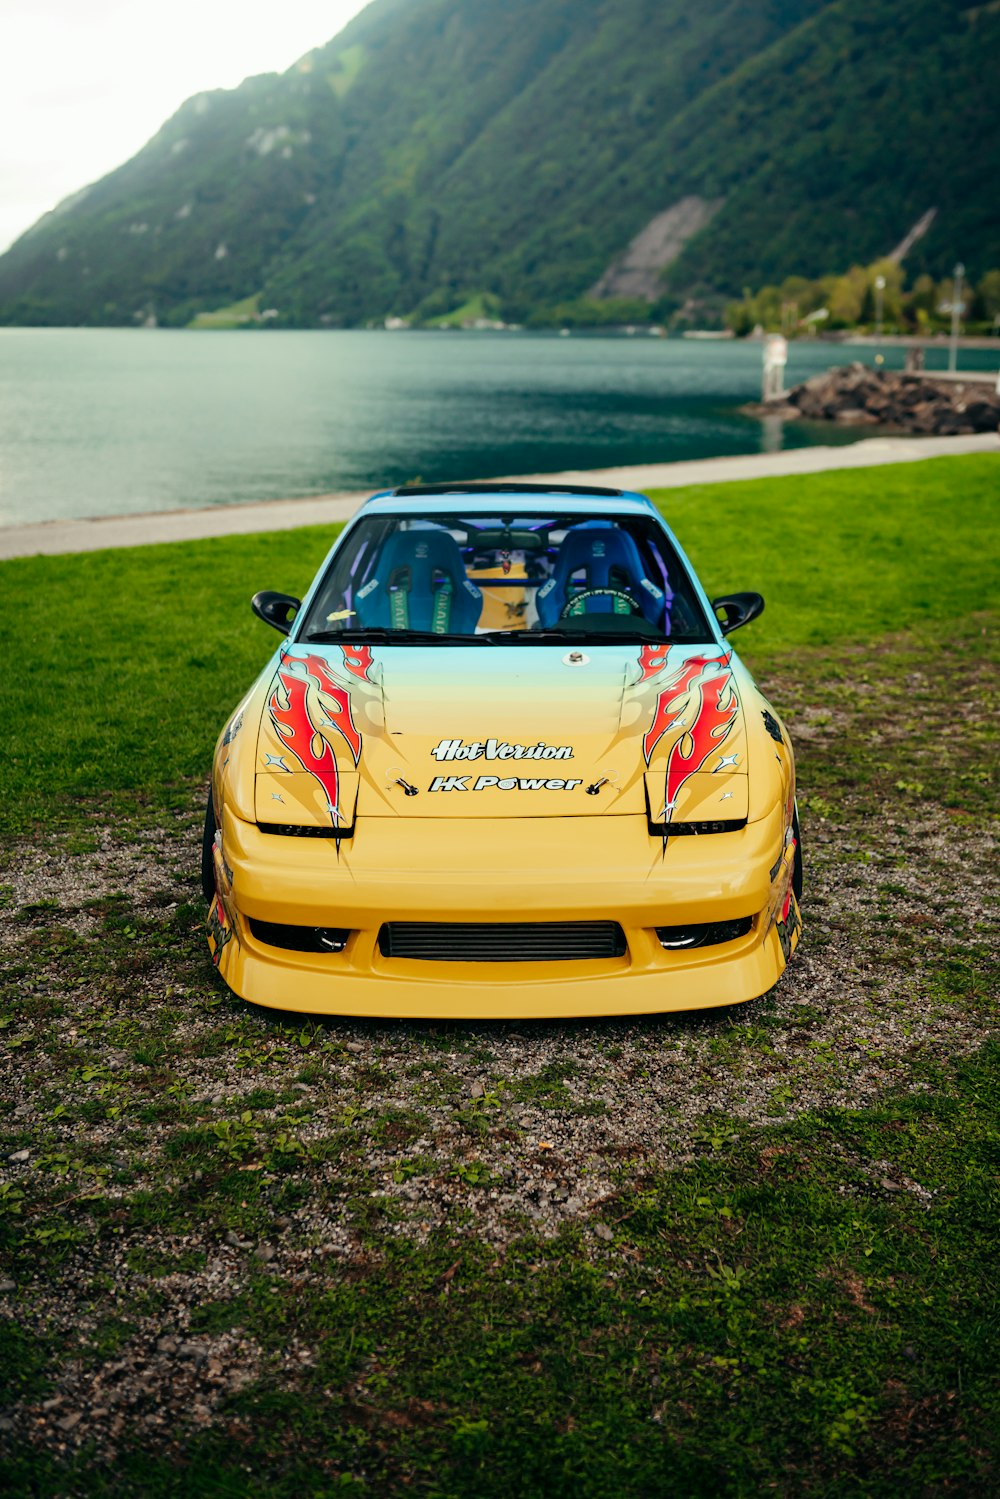 Un auto deportivo amarillo estacionado al lado de un lago